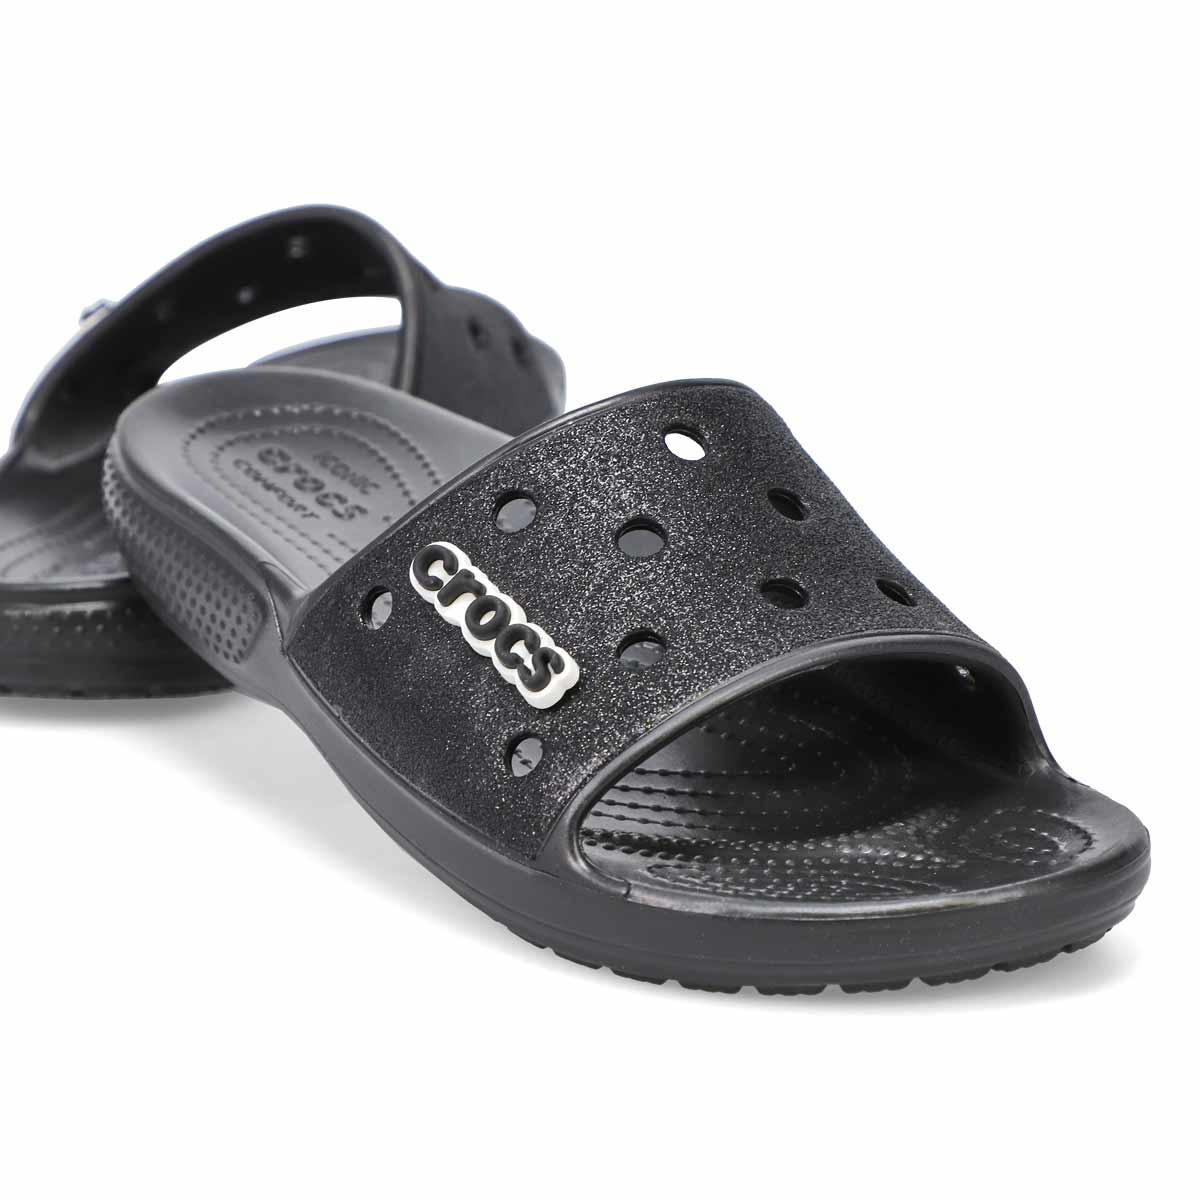 Crocs Women's Classic Crocs Sandal - Glitter | SoftMoc.com